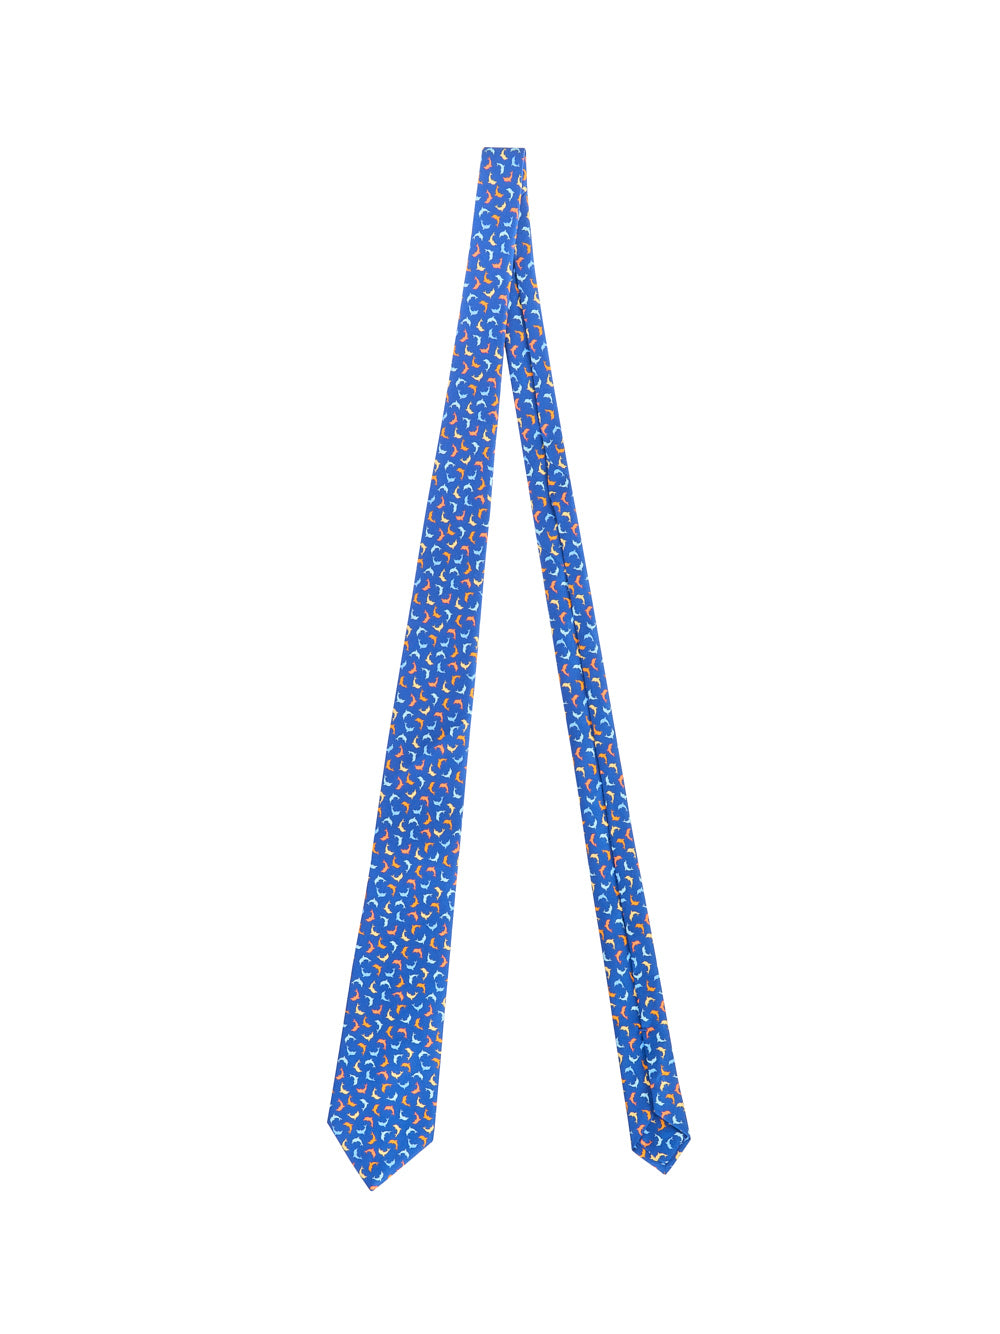 Cravatta PETRONIUS Delfino
Blu